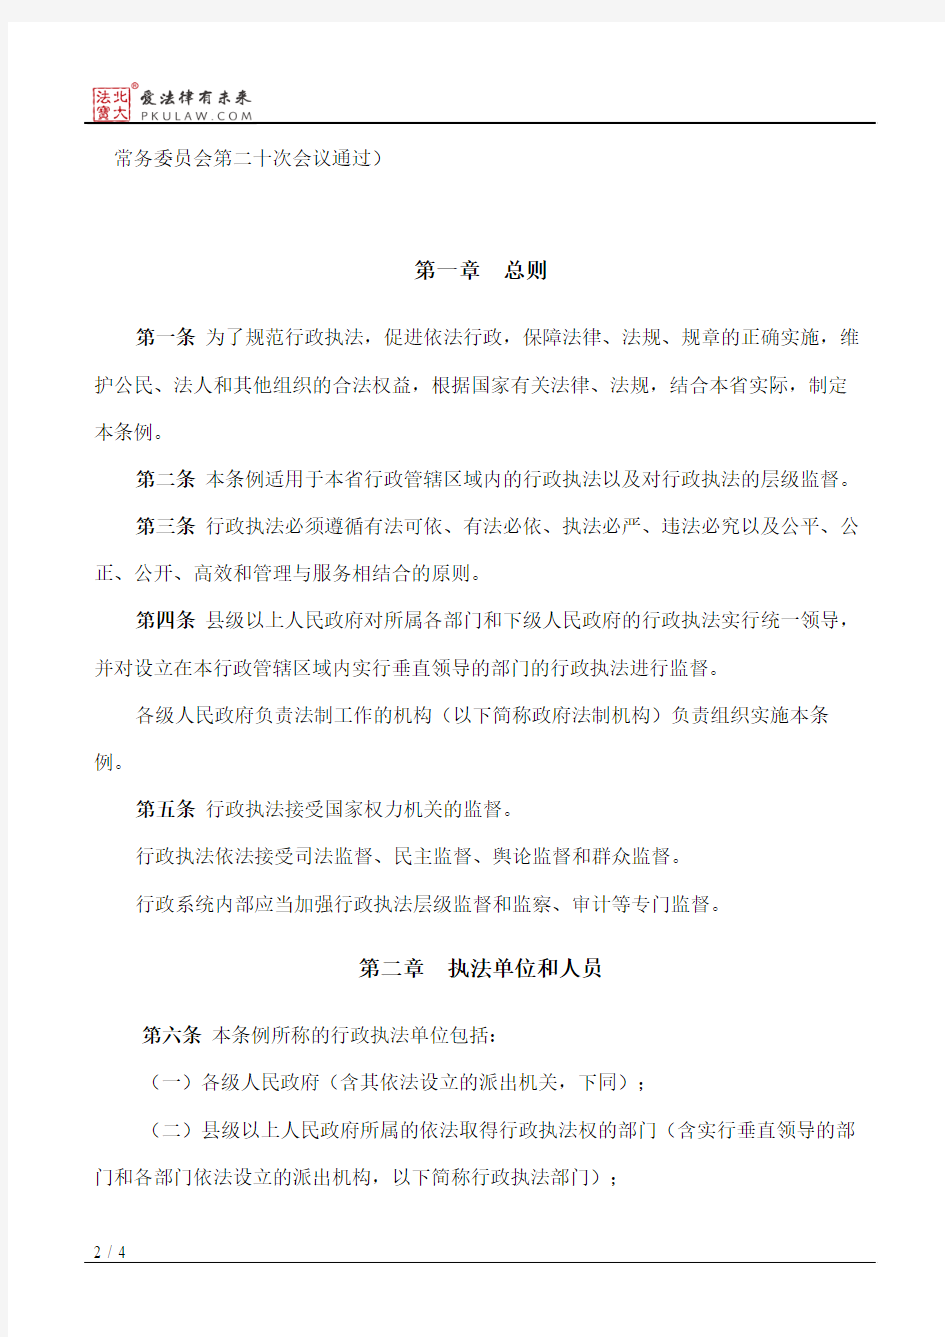 黑龙江省规范行政执法条例(2000)